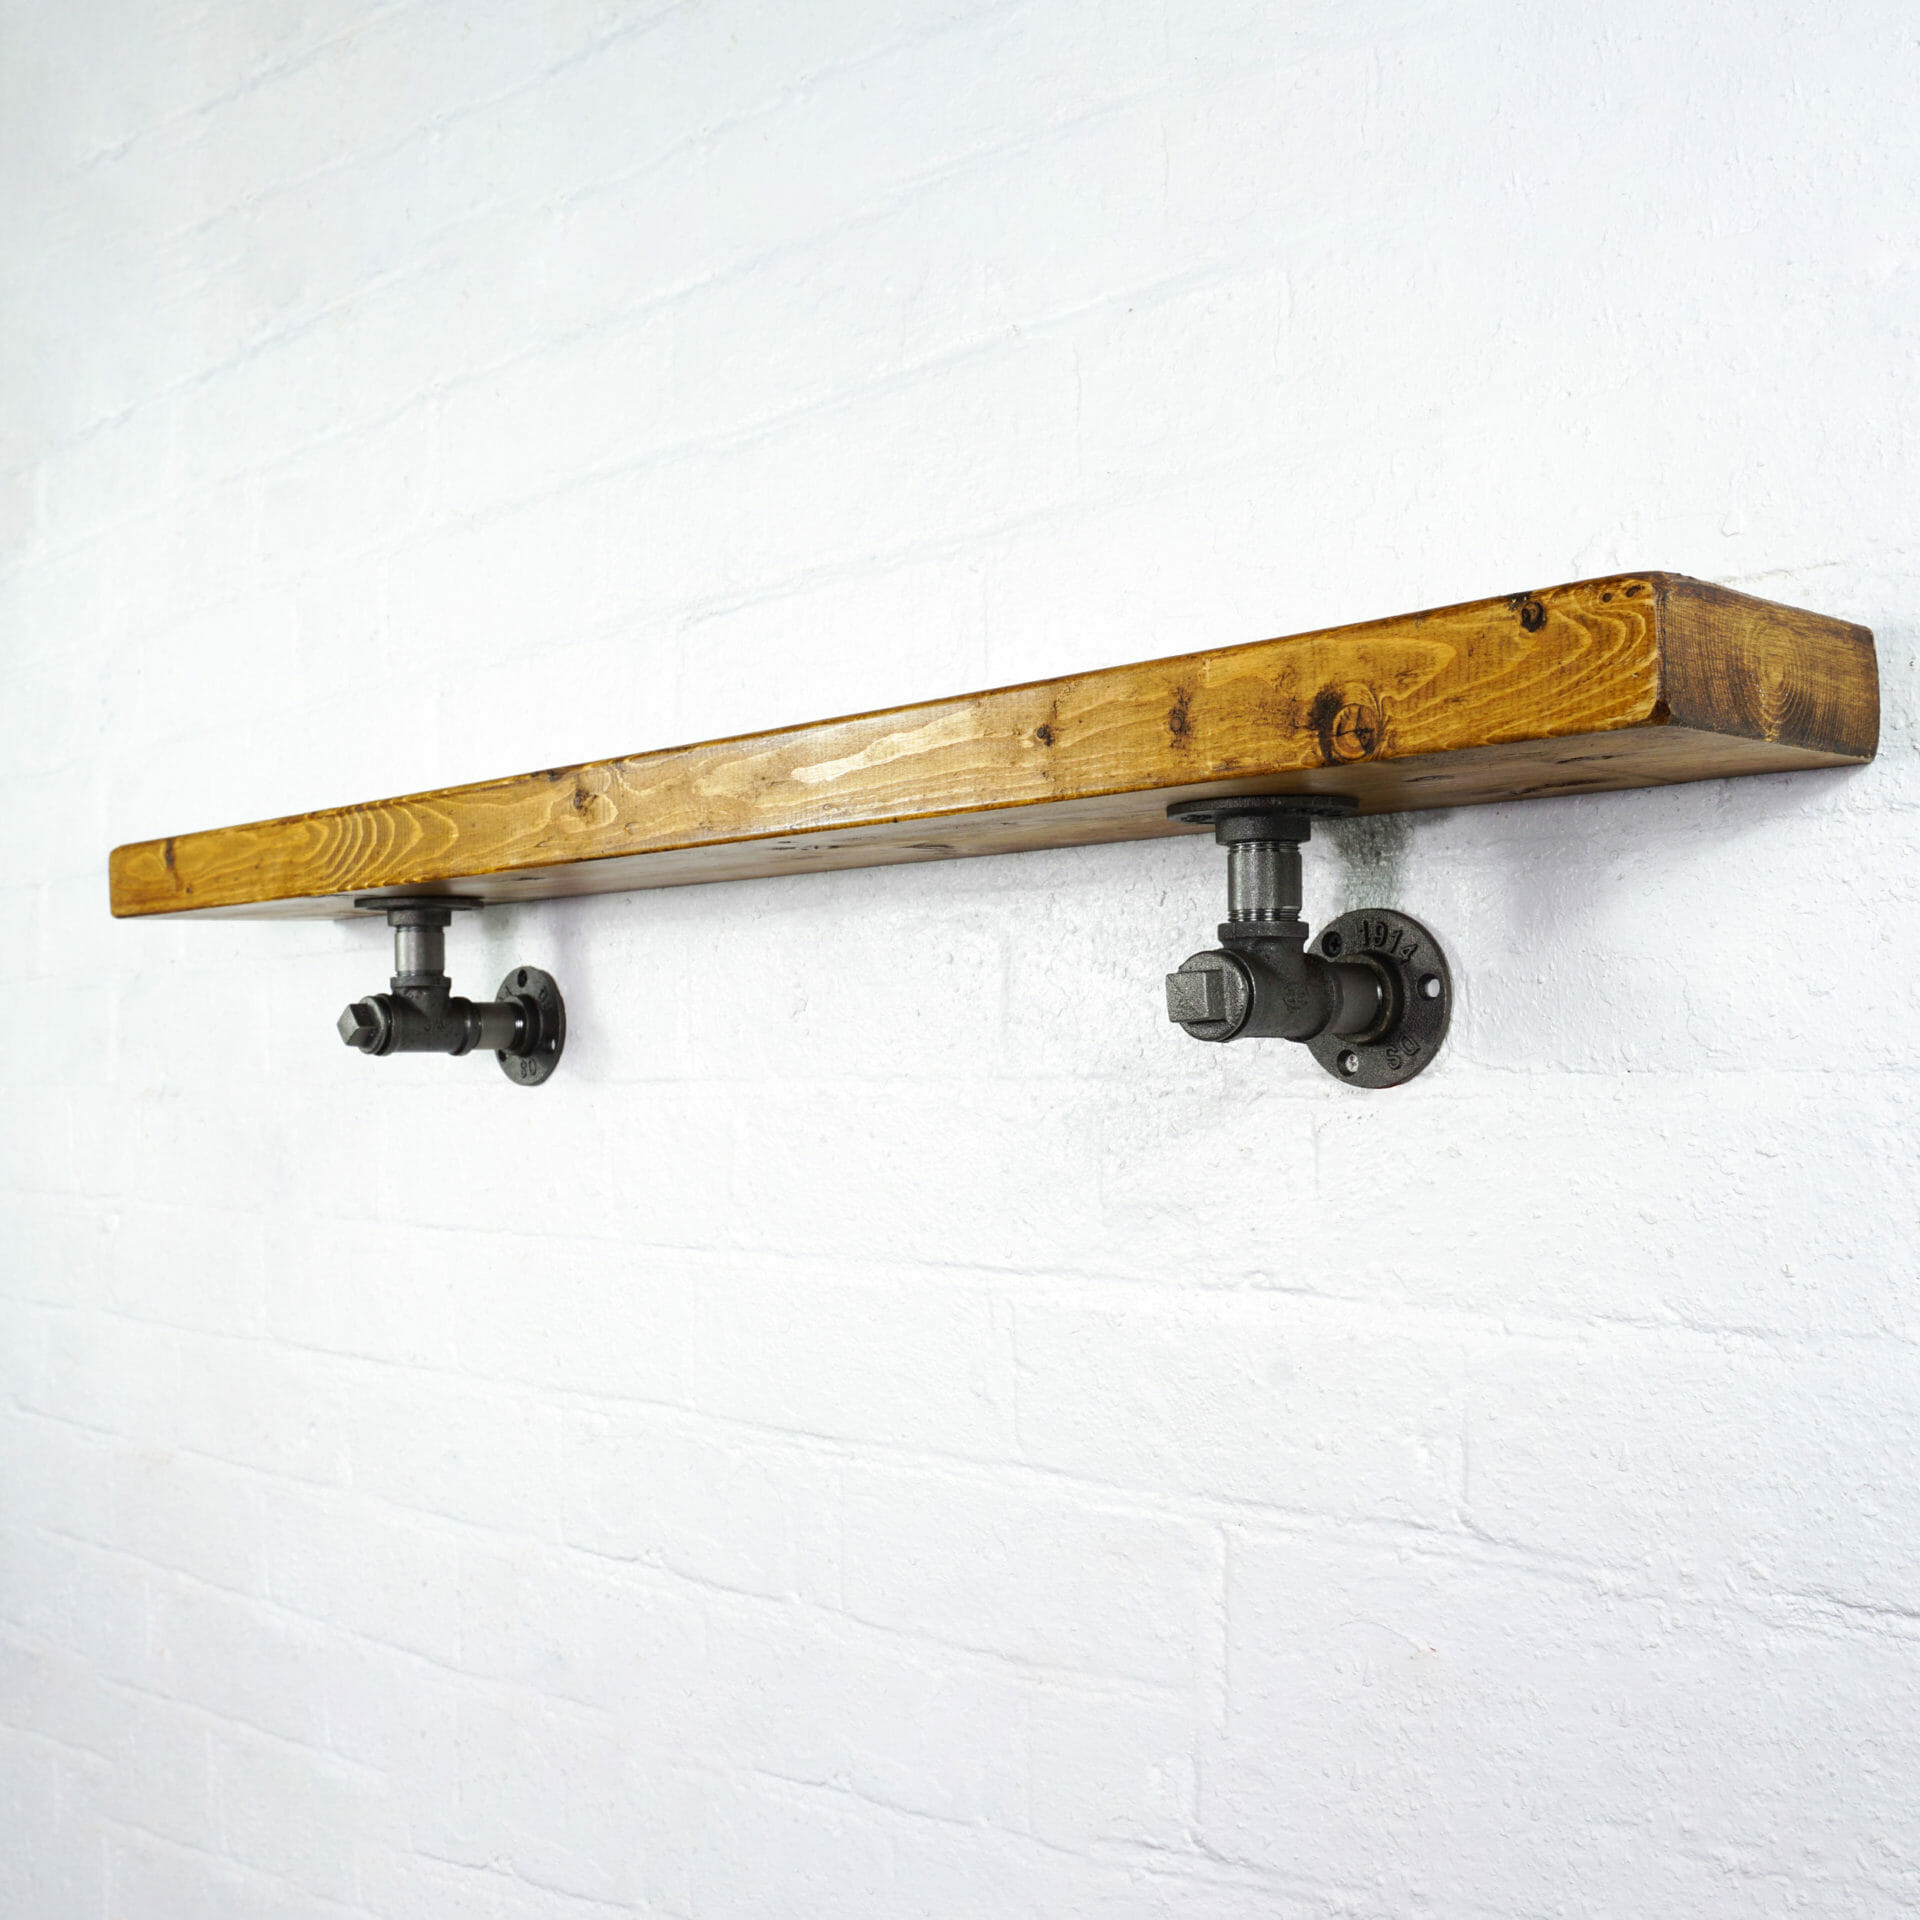 Raw steel industrial pipe tee nut shelving brackets with reclaimed wood scaffolding board shelf